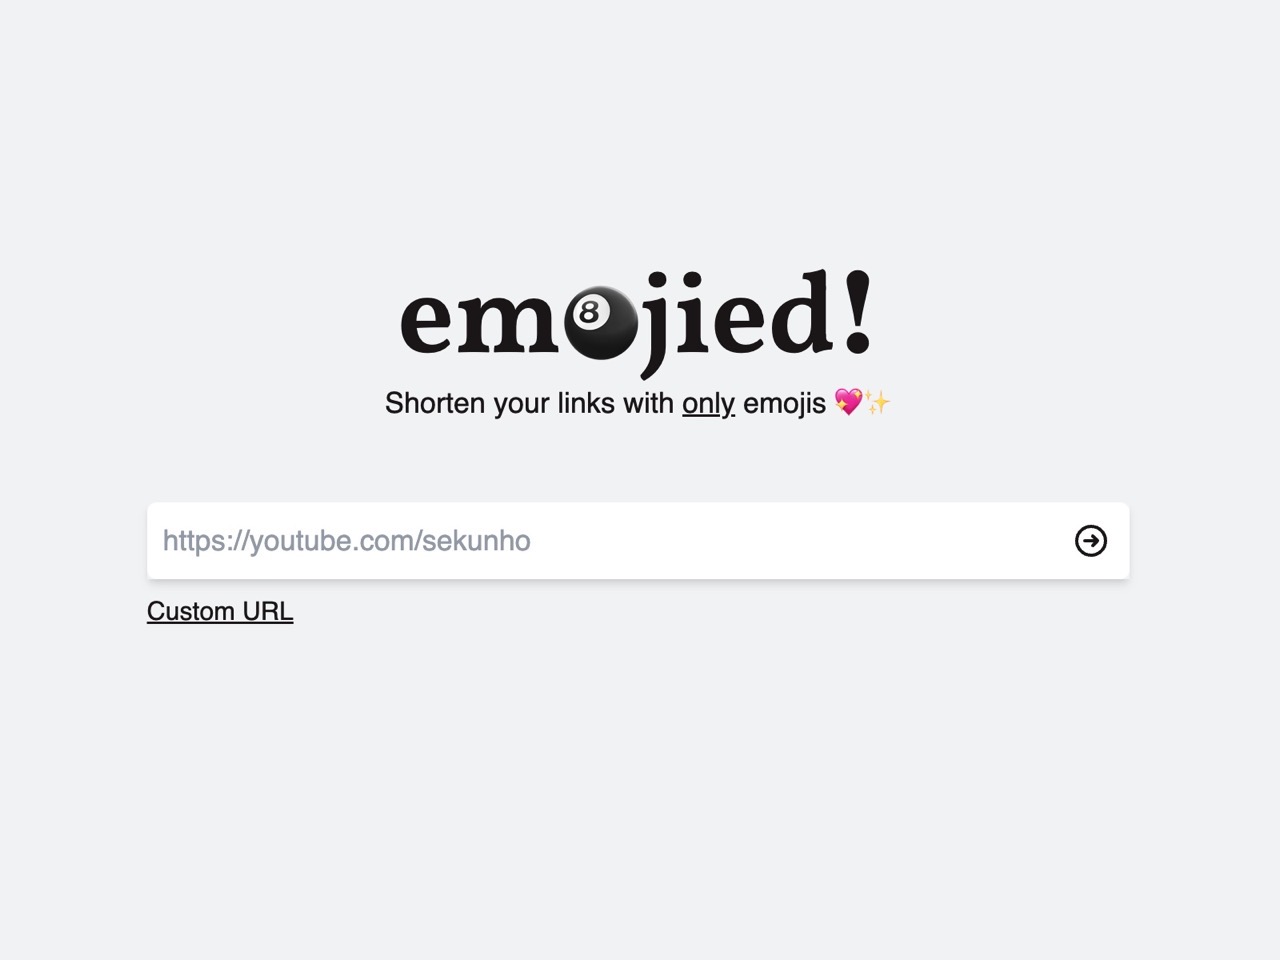 Emojied 免費縮網址工具，讓短網址帶有個性化表情符號😂